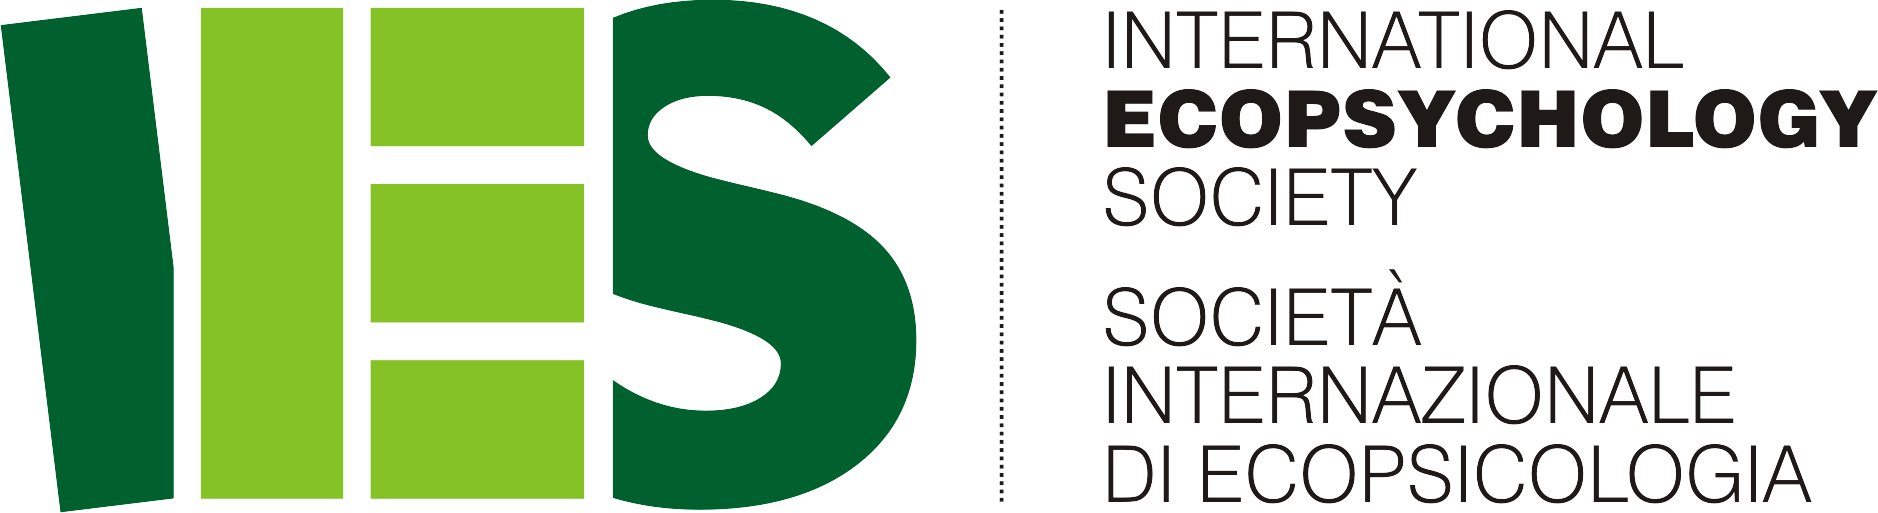 International Ecopsychology Society